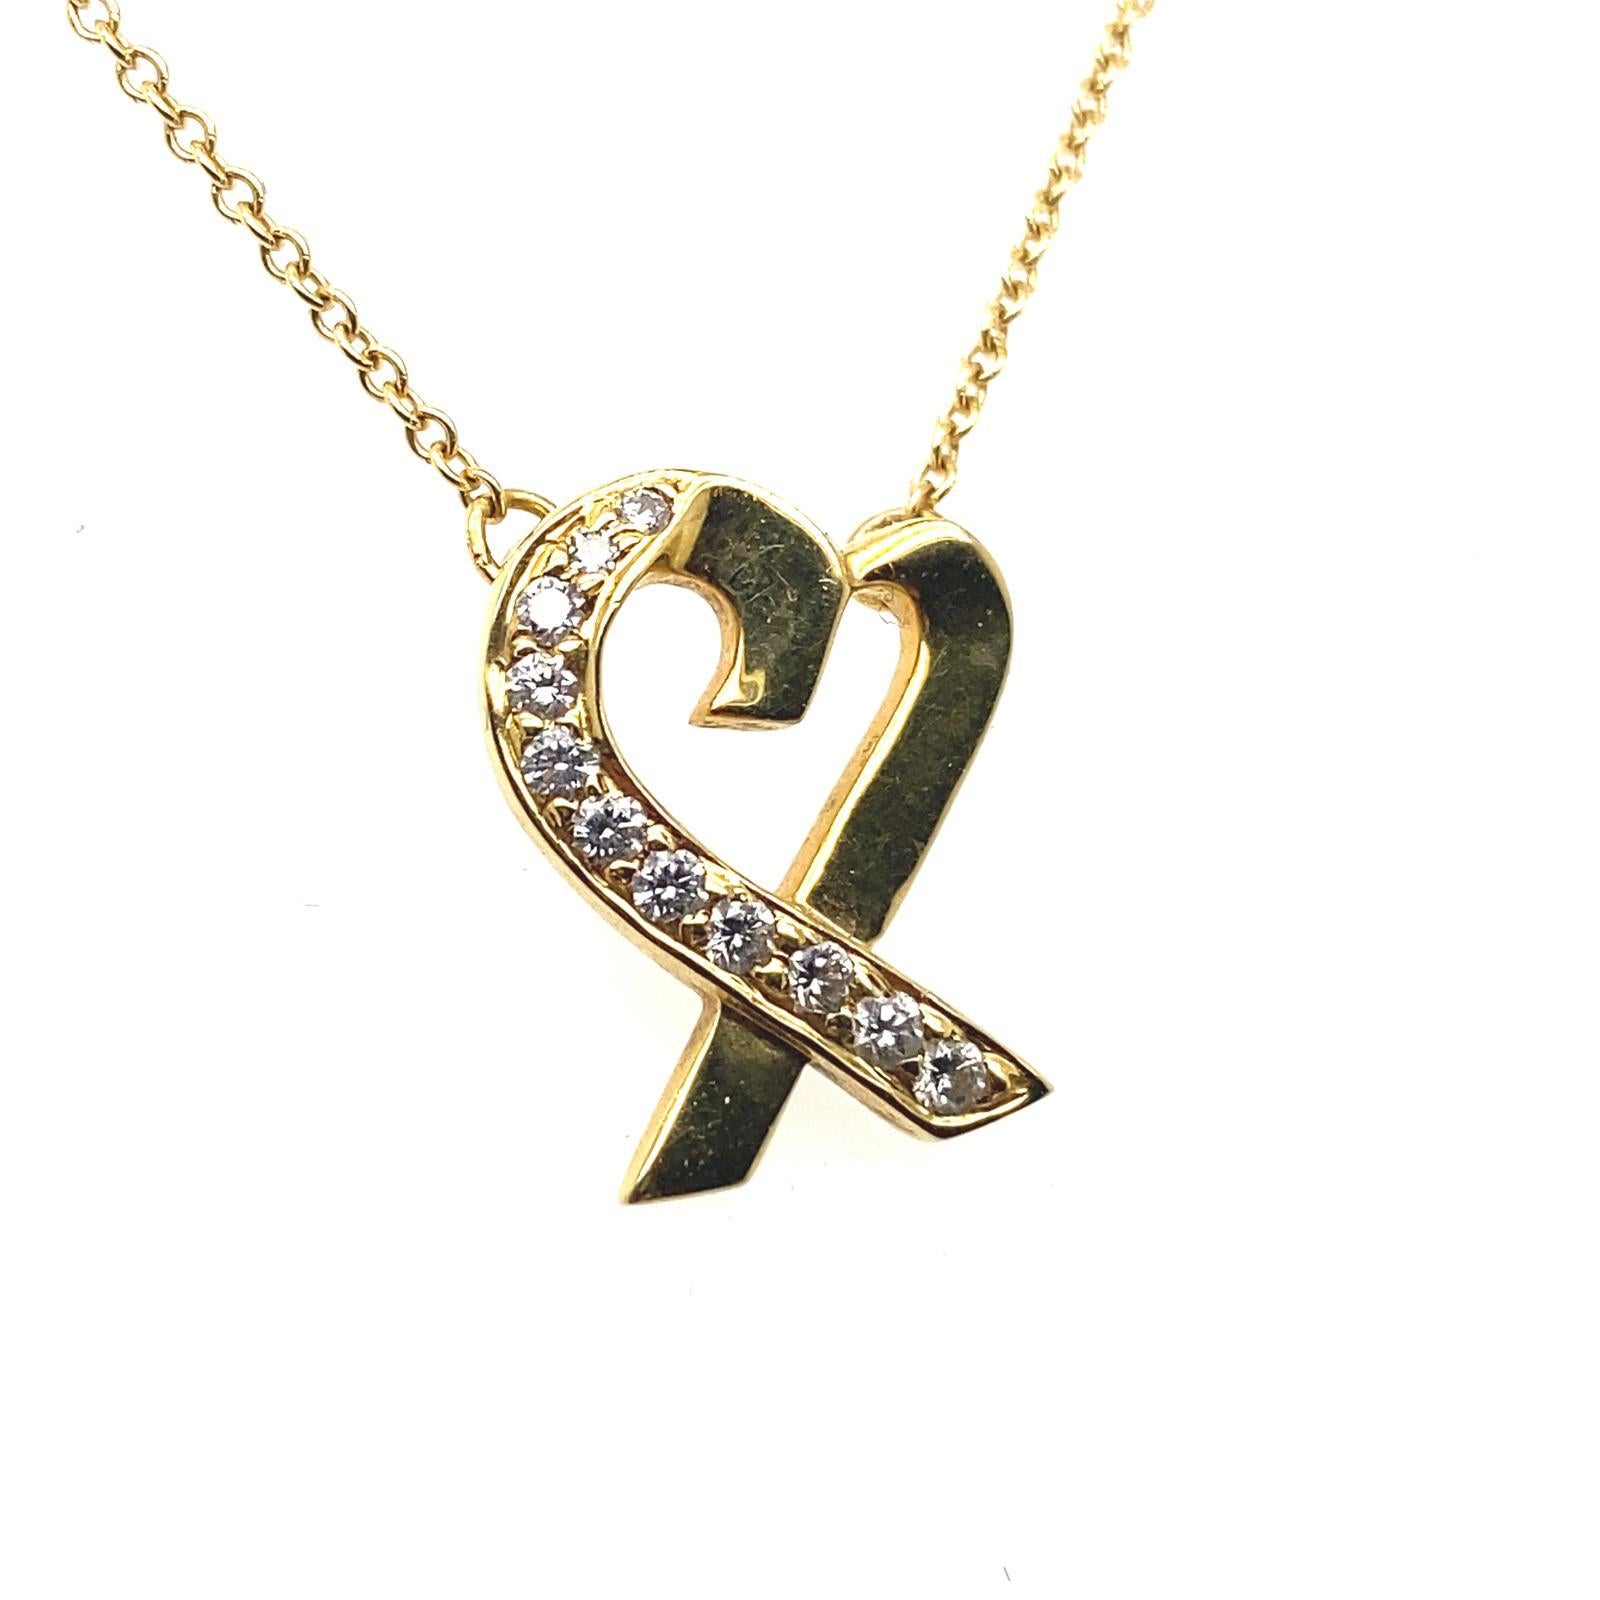 Pendentif en forme de cœur en diamants et chaîne en or jaune 18 carats de Paloma Picasso pour Tiffany & Co.

Ce pendentif à cœur ouvert en or jaune 18 carats est l'une des créations emblématiques de Paloma Picasso pour Tiffany & Co. Il est serti sur